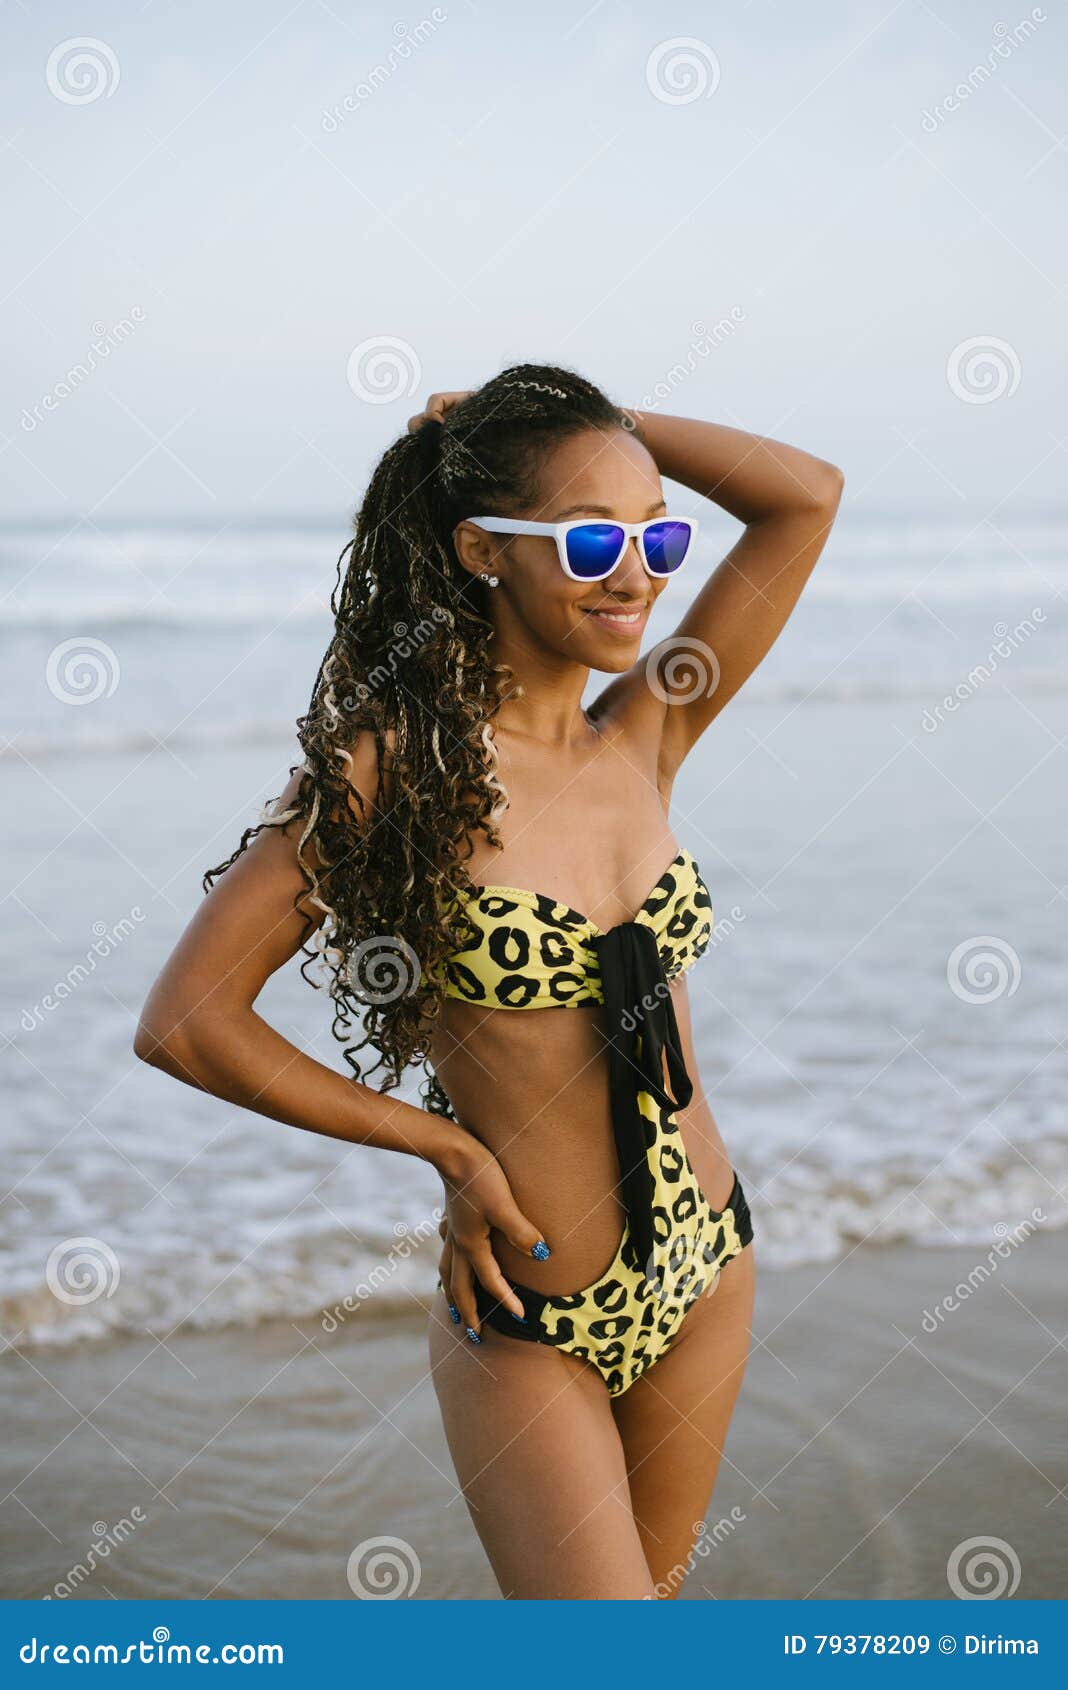 Brazilian Women Bikini